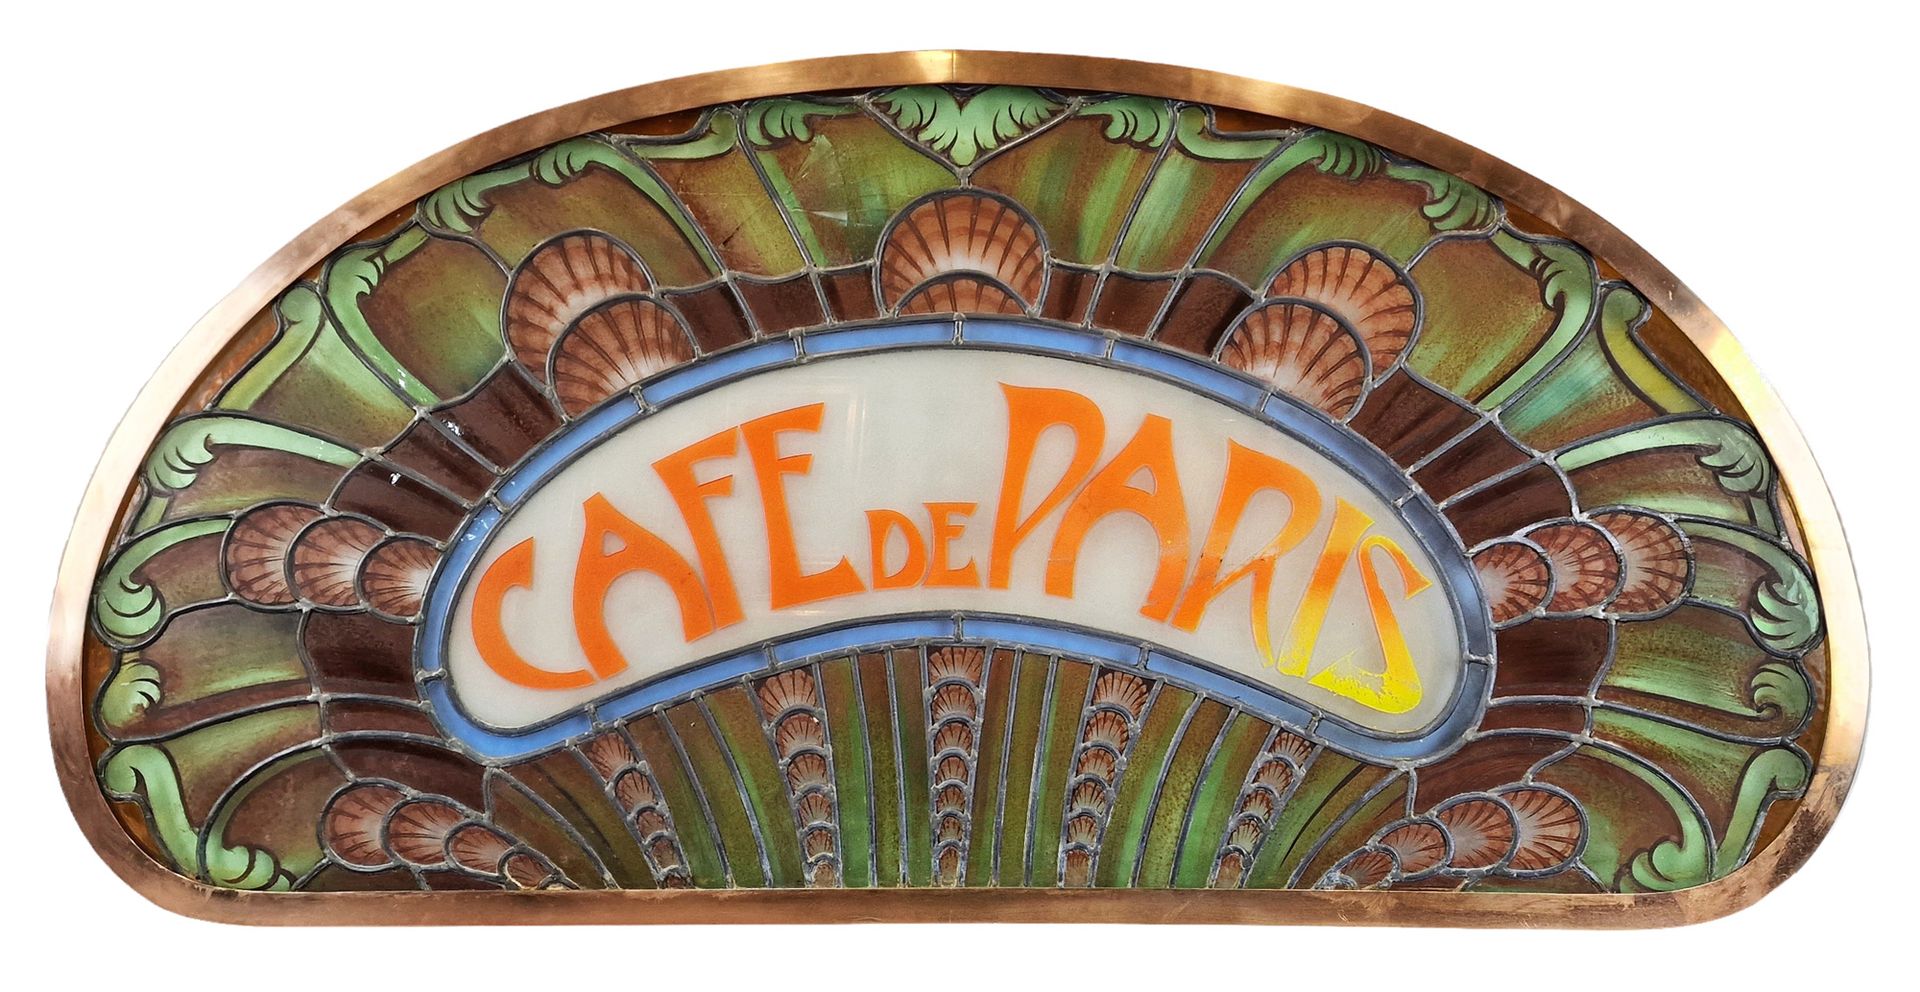 CAFE DE PARIS CAFE DE PARIS

Importante vidriera de estilo Art Nouveau

--------&hellip;